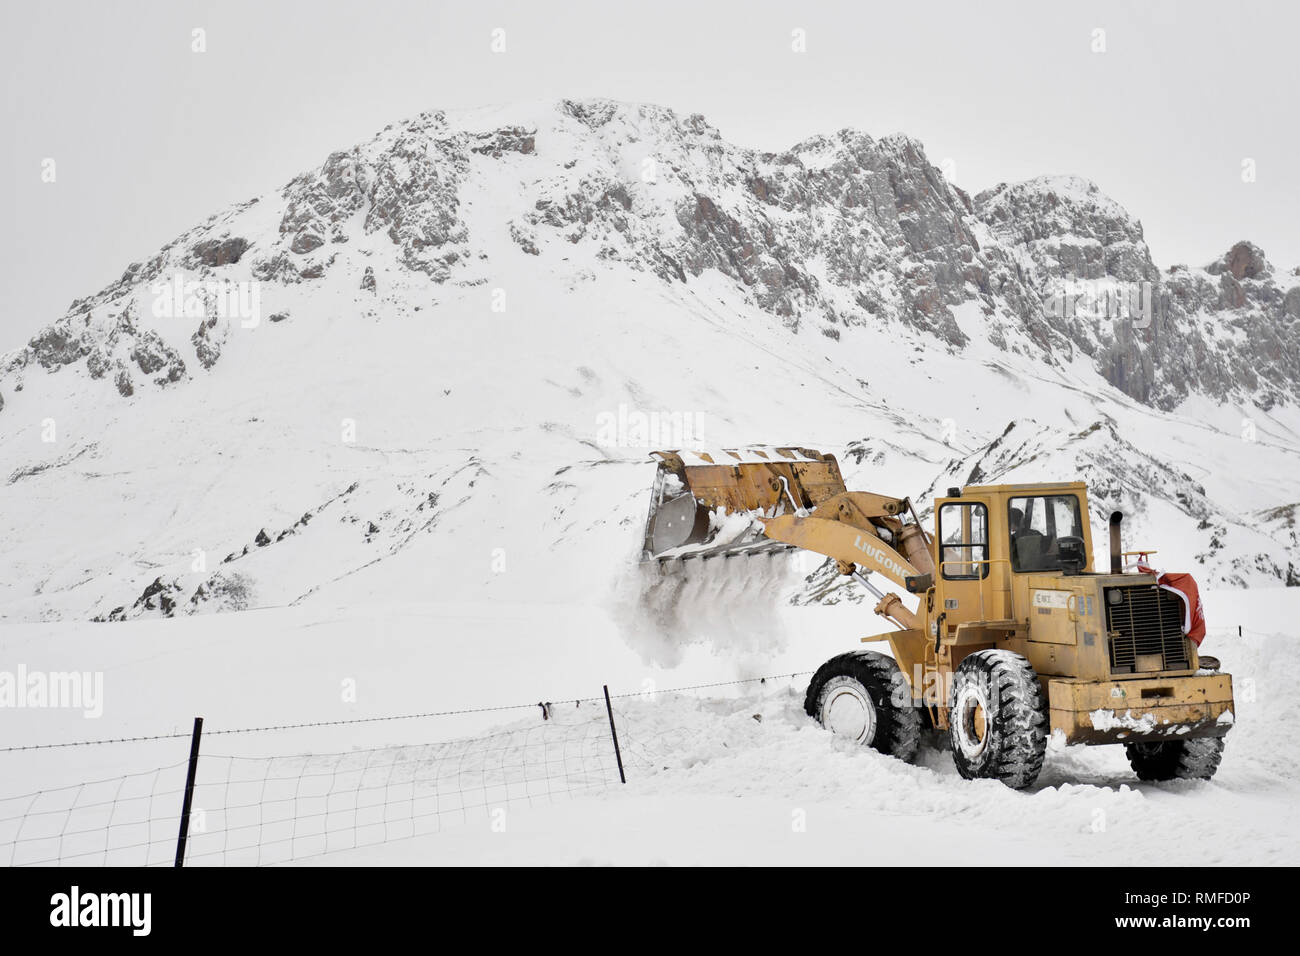 Yushu, dans la province de Qinghai en Chine. Feb 14, 2019. Un bulldozer nettoie la neige en Zhaqing Zaduo ville du comté de la préfecture autonome tibétaine de Yushu, dans la province de Qinghai en Chine, le 14 février 2019. Après des jours de tempêtes de neige, les routes dans de nombreux domaines de la préfecture autonome tibétaine de Yushu sont couverts sous la neige jusqu'à 45 centimètres. L'autorité locale d'Zaduo a envoyé 37 grandes machines pour le blizzard les zones les plus touchées pour effacer les routes couvertes de neige. Credit : Zhang Long/Xinhua/Alamy Live News Banque D'Images